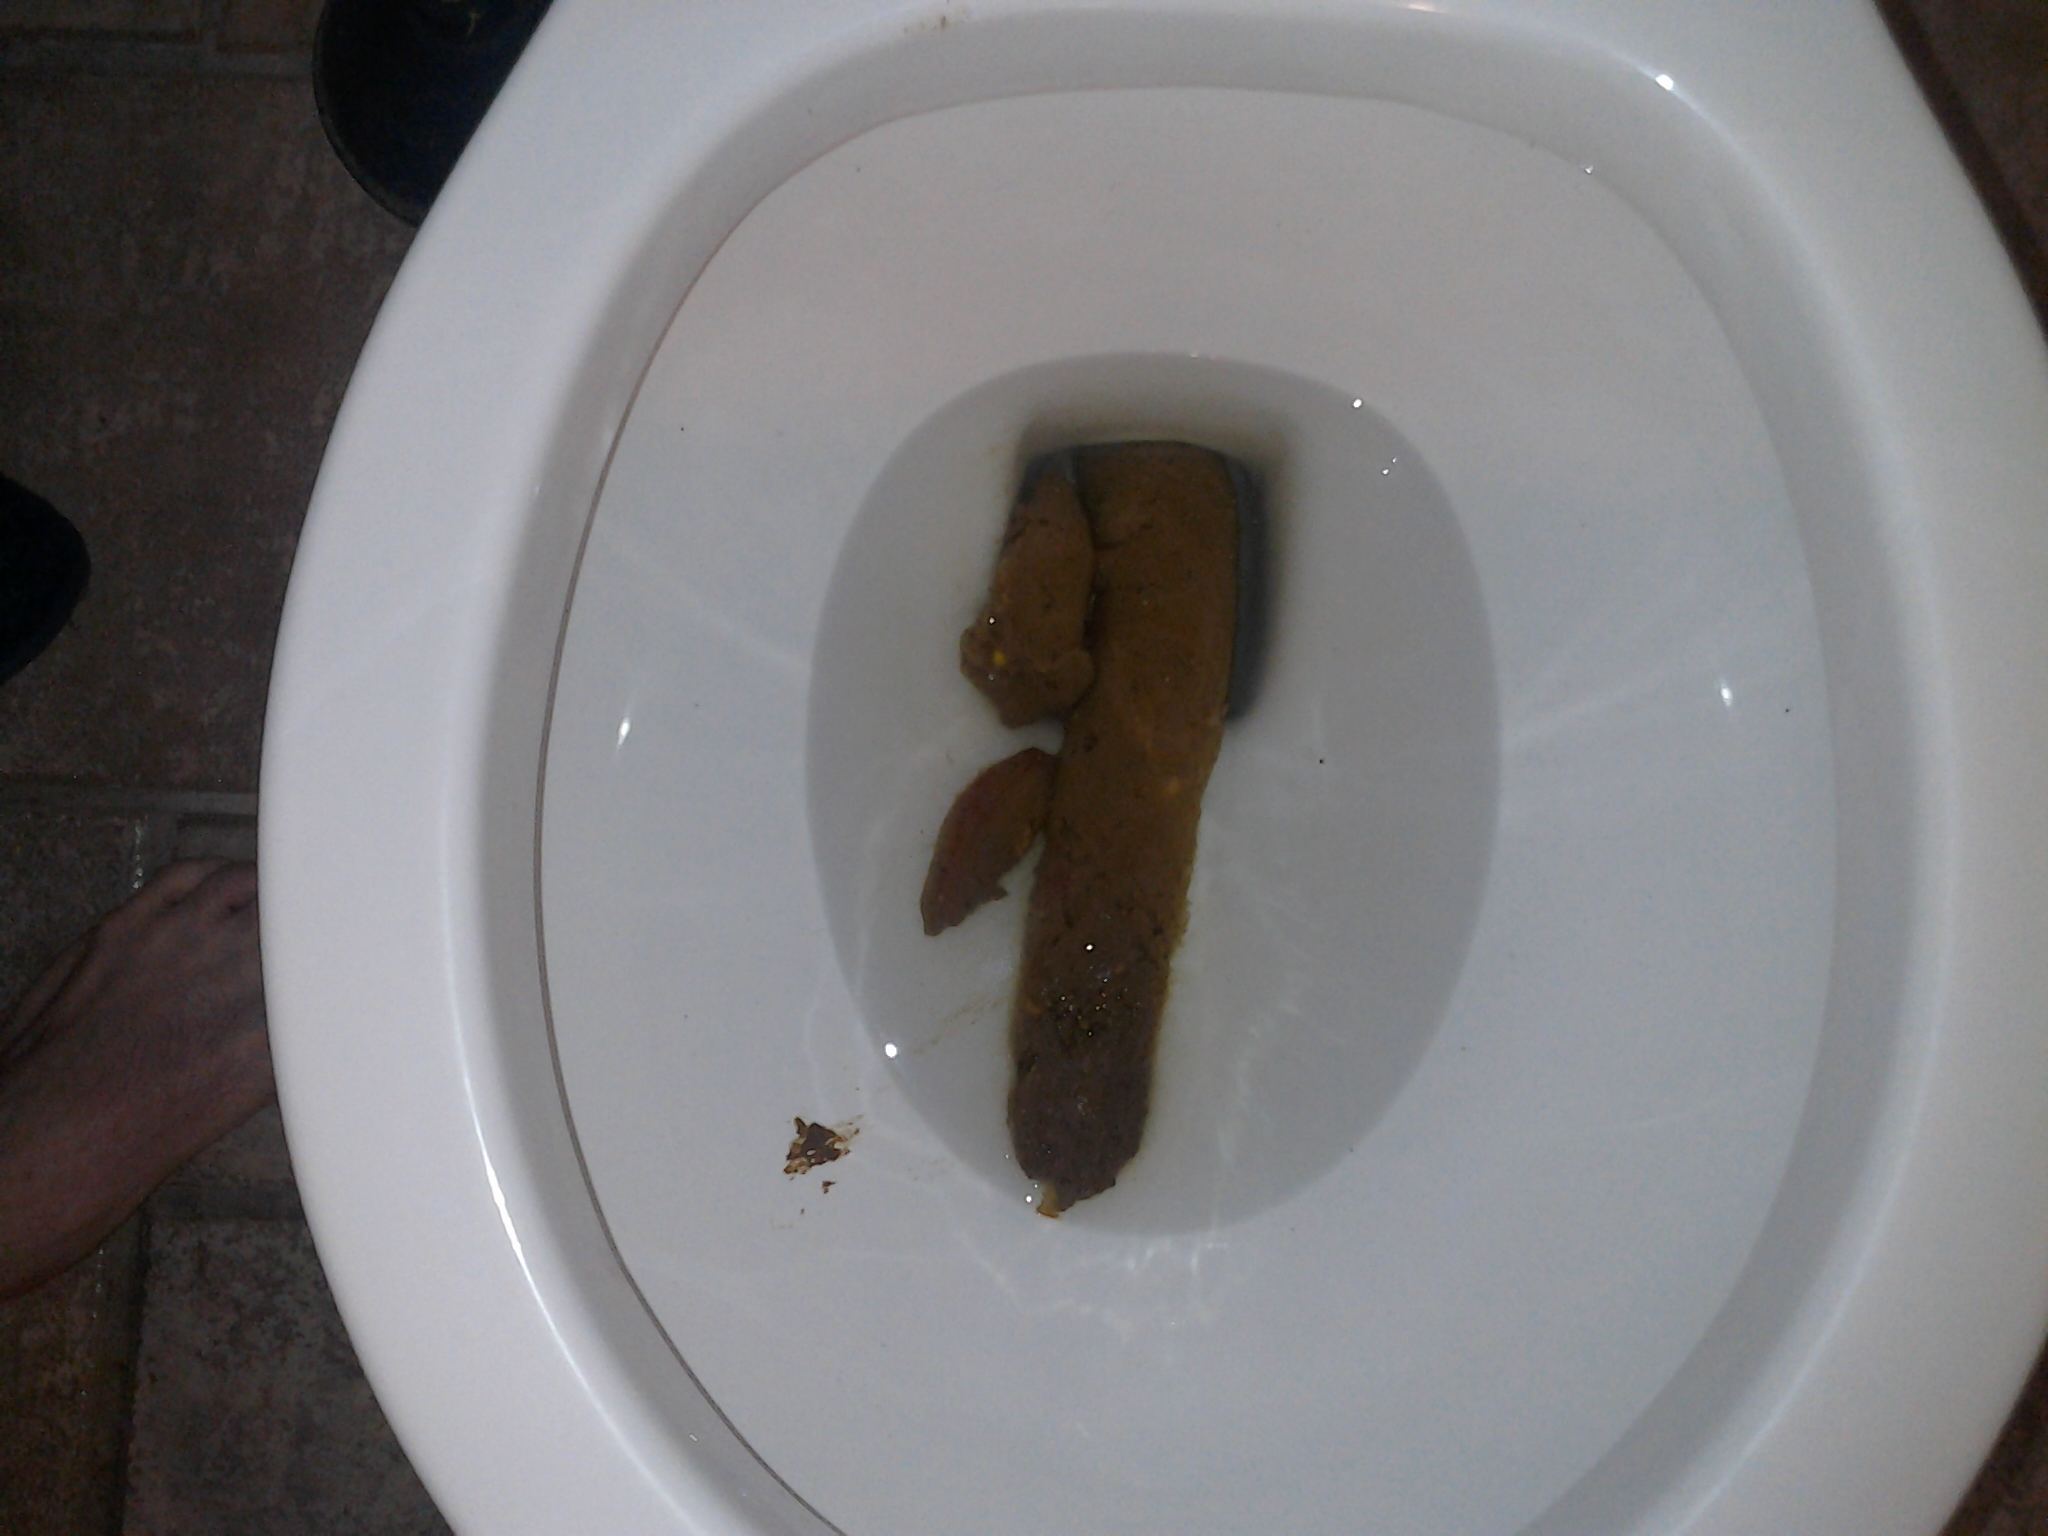 Huge shit in toilet